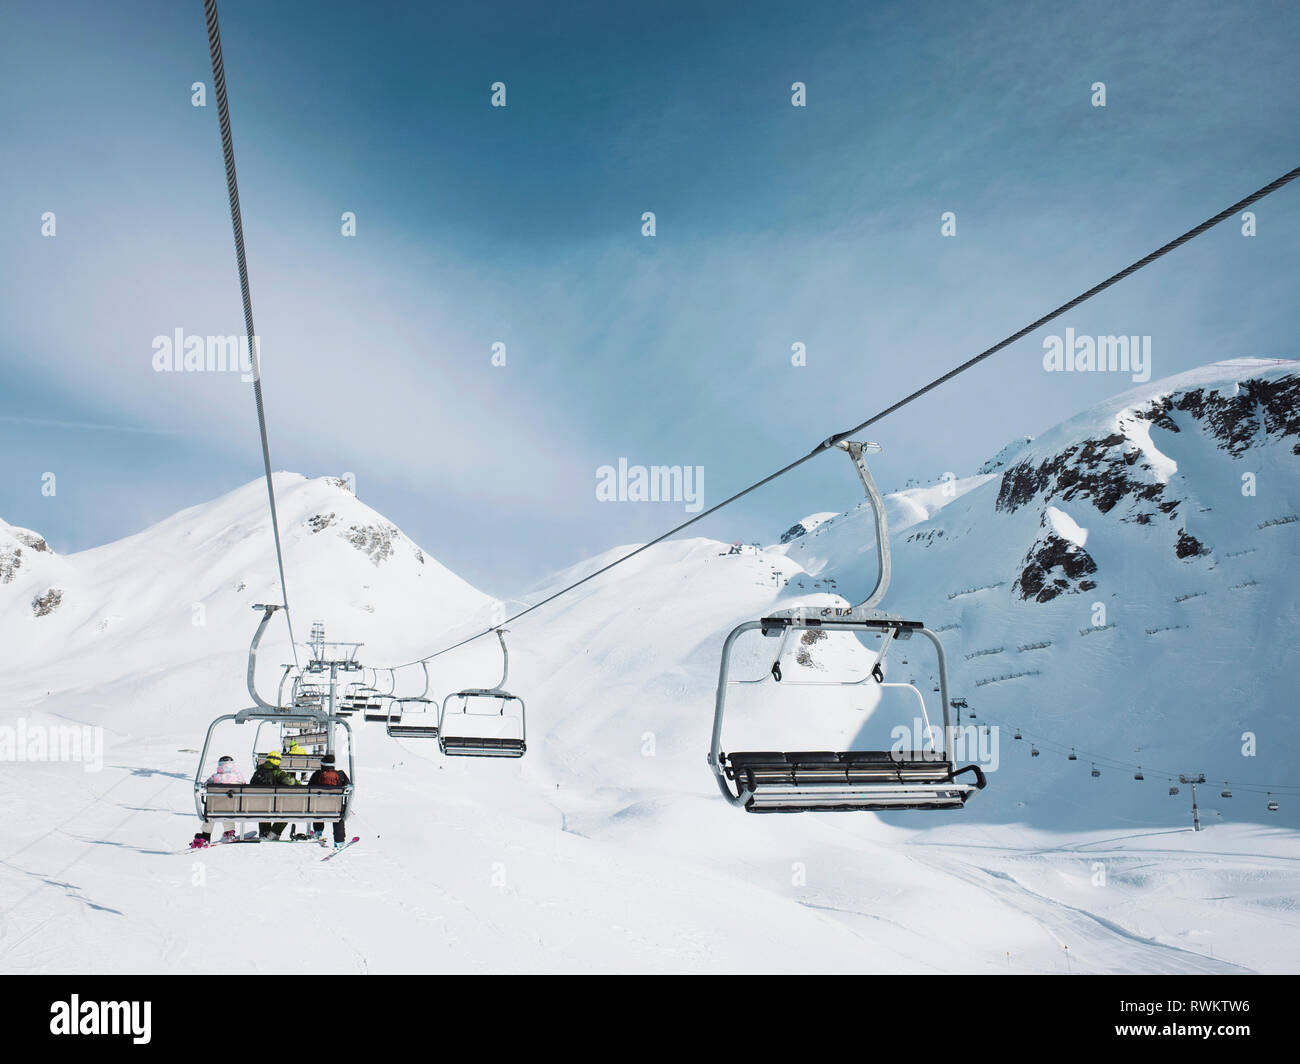 Ski lift in snow covered mountain landscape,  Alpe Ciamporino, Piemonte, Italy Stock Photo